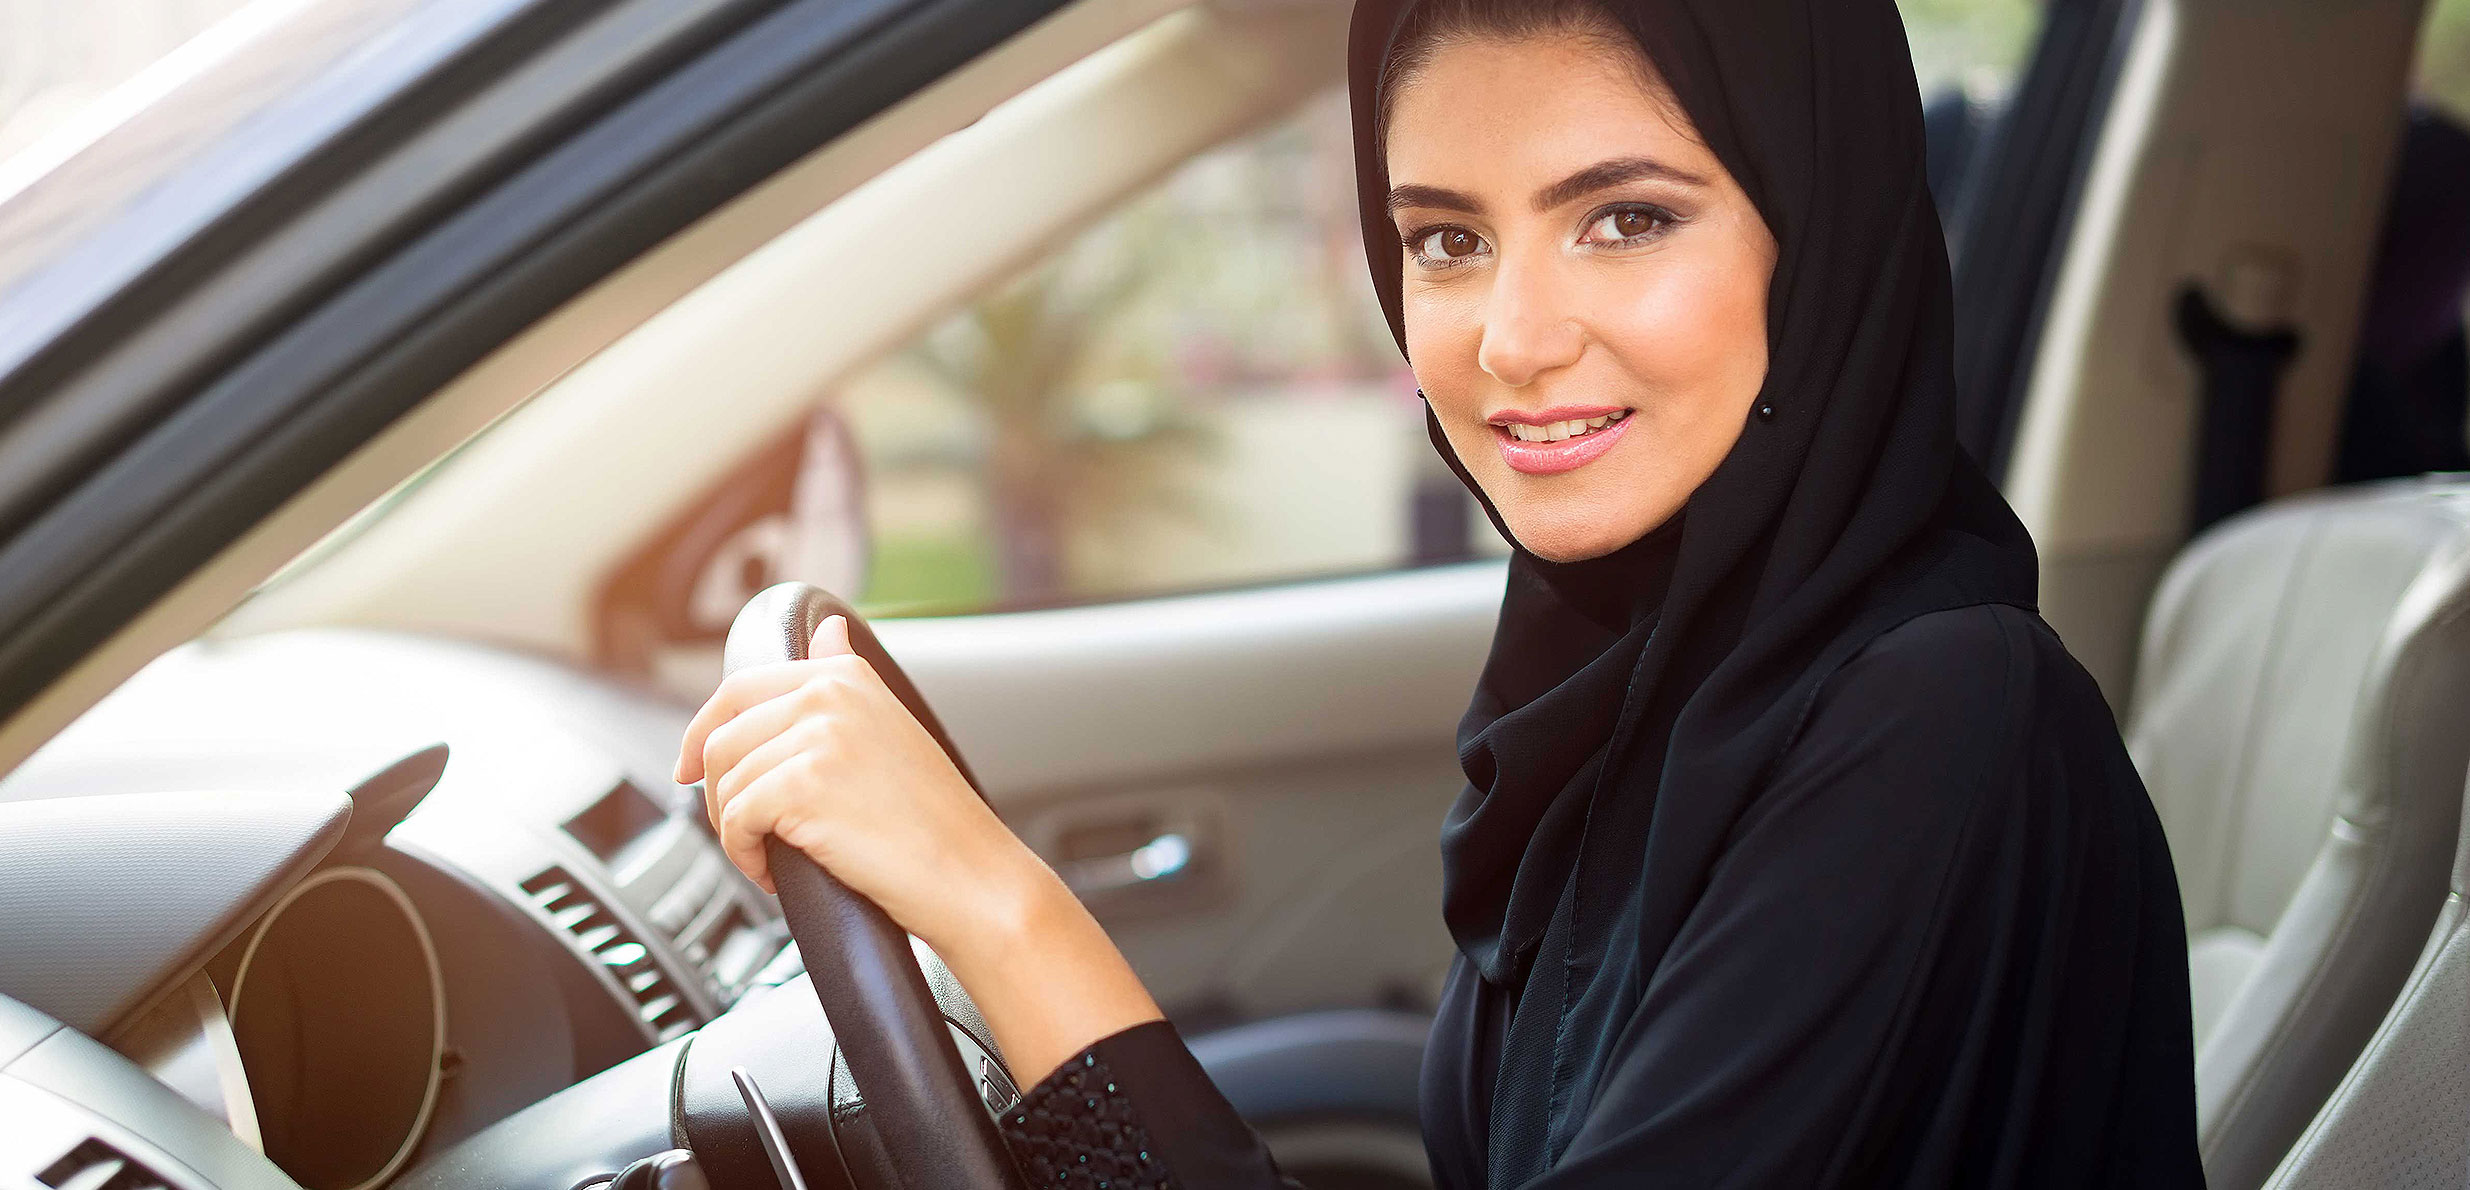 تمويل سيارة بدون كفيل البنك السعودي للاستثمار ميسر للغاية للنساء والرجال